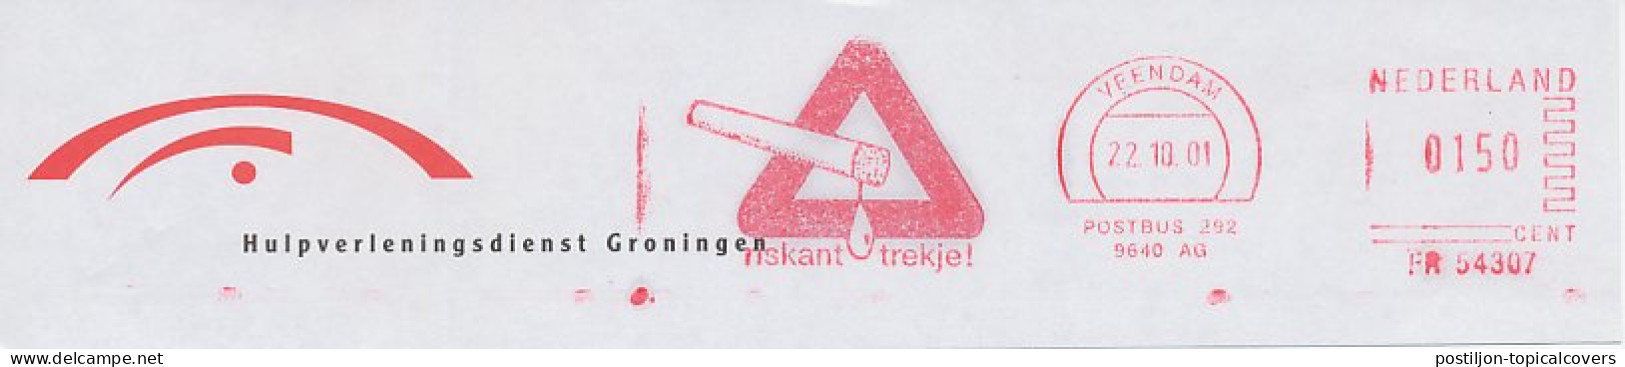 Meter Top Cut Netherlands 2001 Cigarette - Risky Drag - Tabac